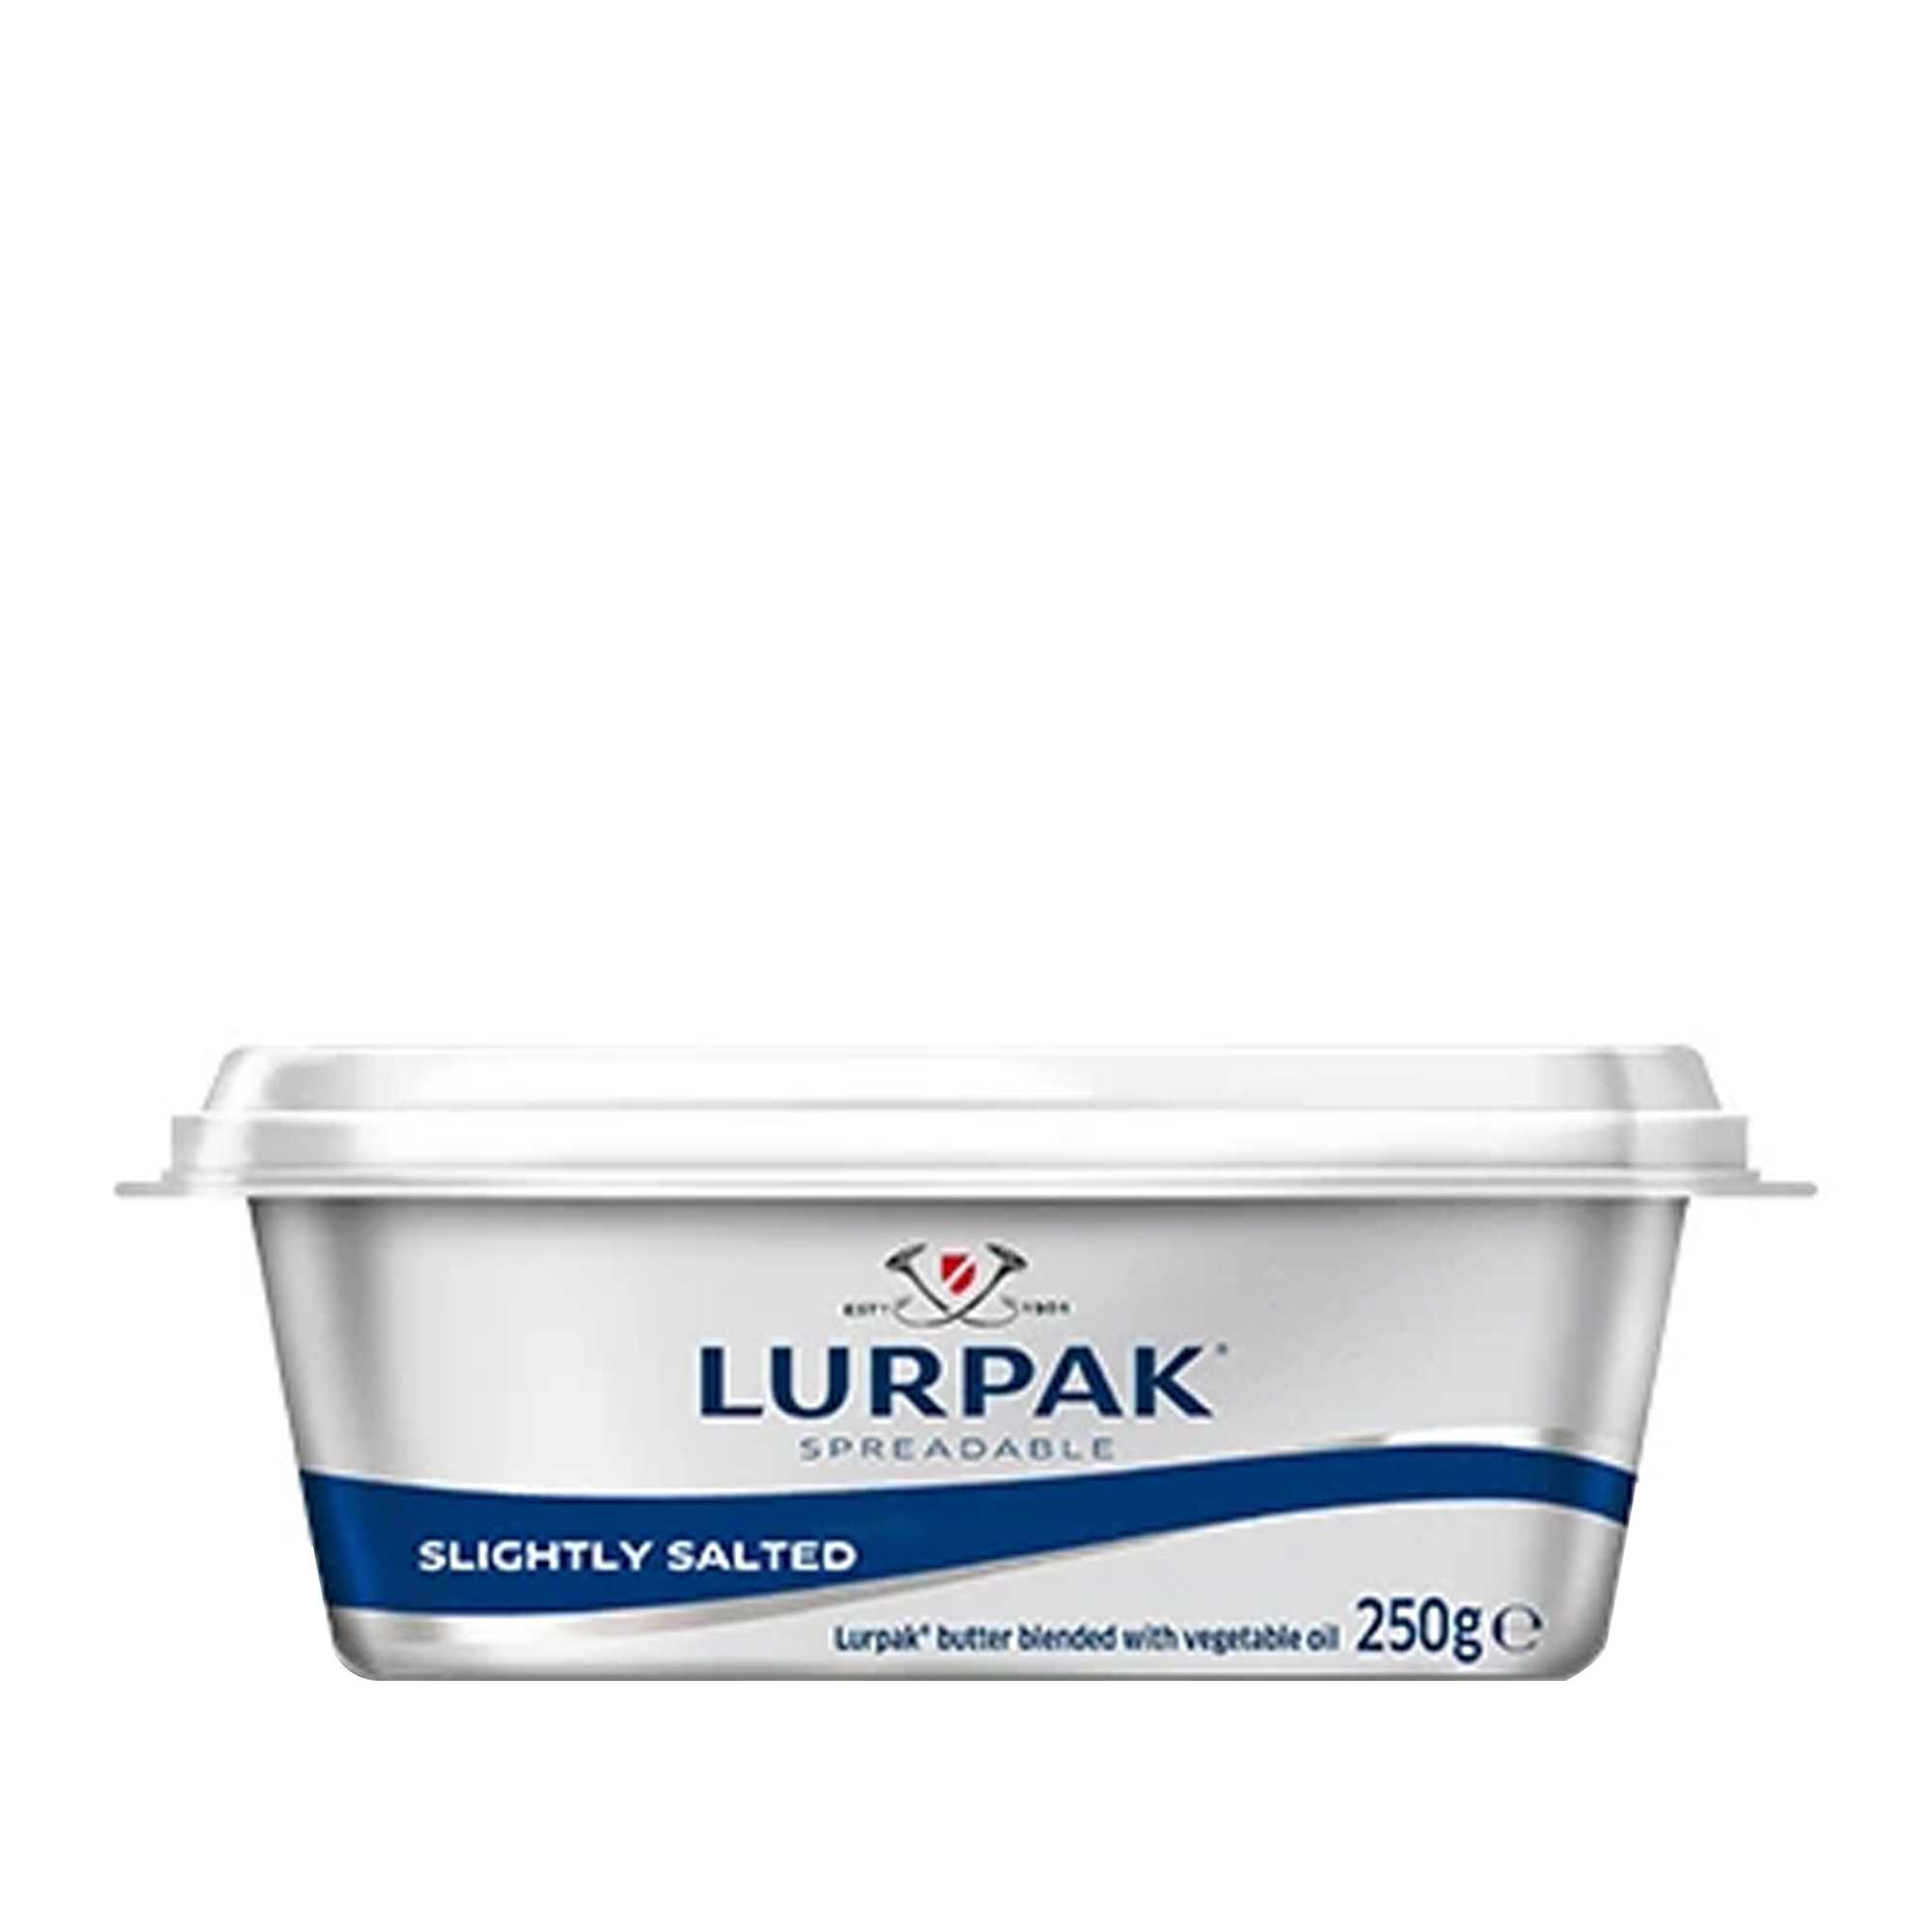 Lurpak Butter Spreadable Slightly Salted 250gm